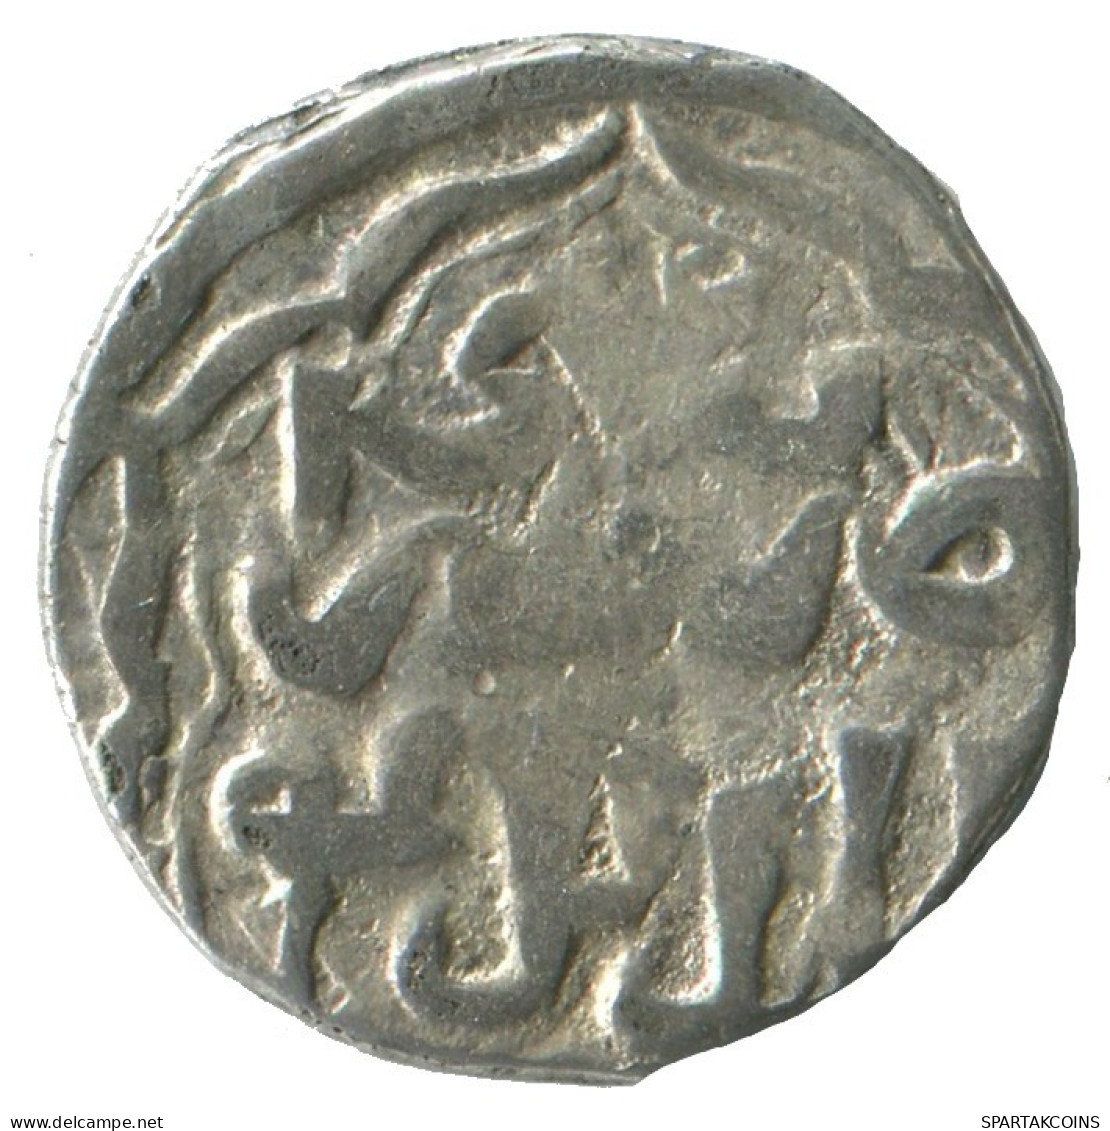 GOLDEN HORDE Silver Dirham Medieval Islamic Coin 1.2g/15mm #NNN2031.8.D.A - Islamische Münzen